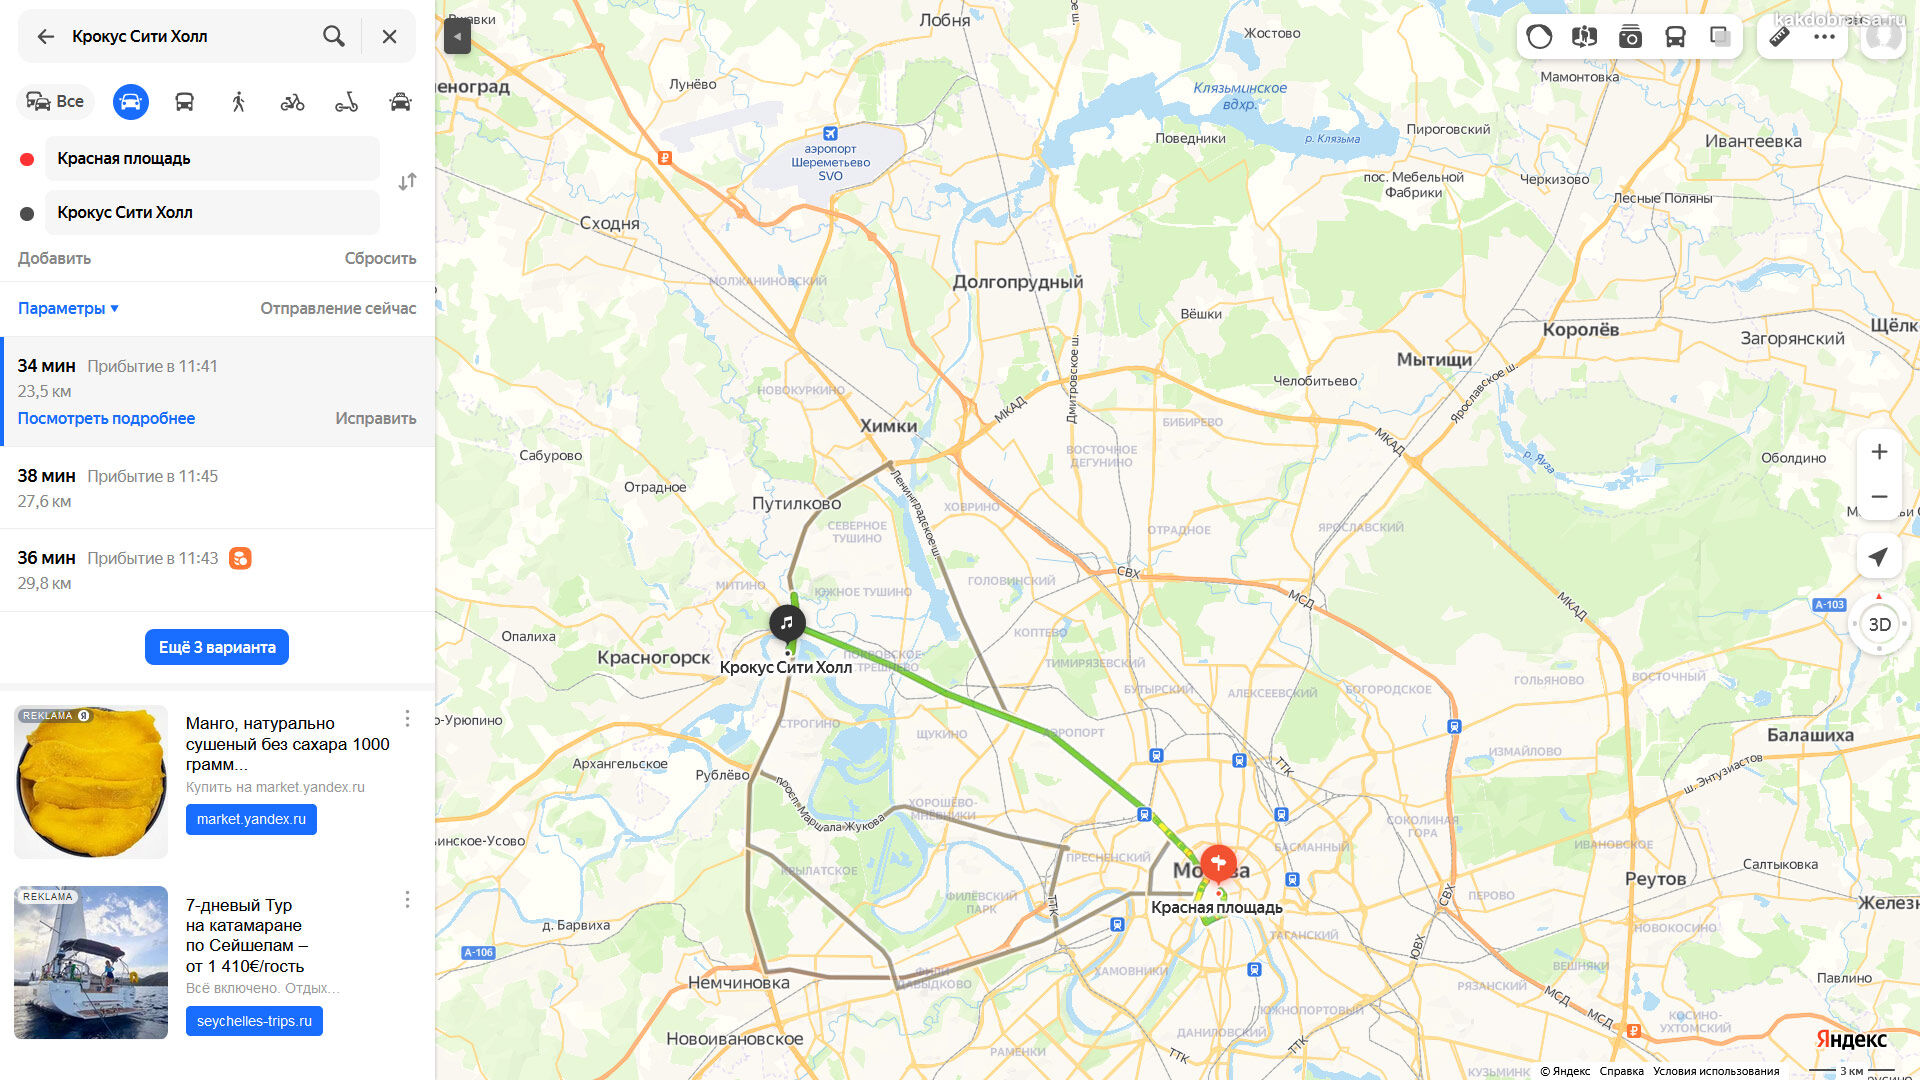 Крокус на карте Москвы. Крокус Сити на карте Москвы. Крокус Сити Холл на карте Москвы. Крокус Сити Холл станция метро ближайшее. Крокус сити станция метро ближайшая